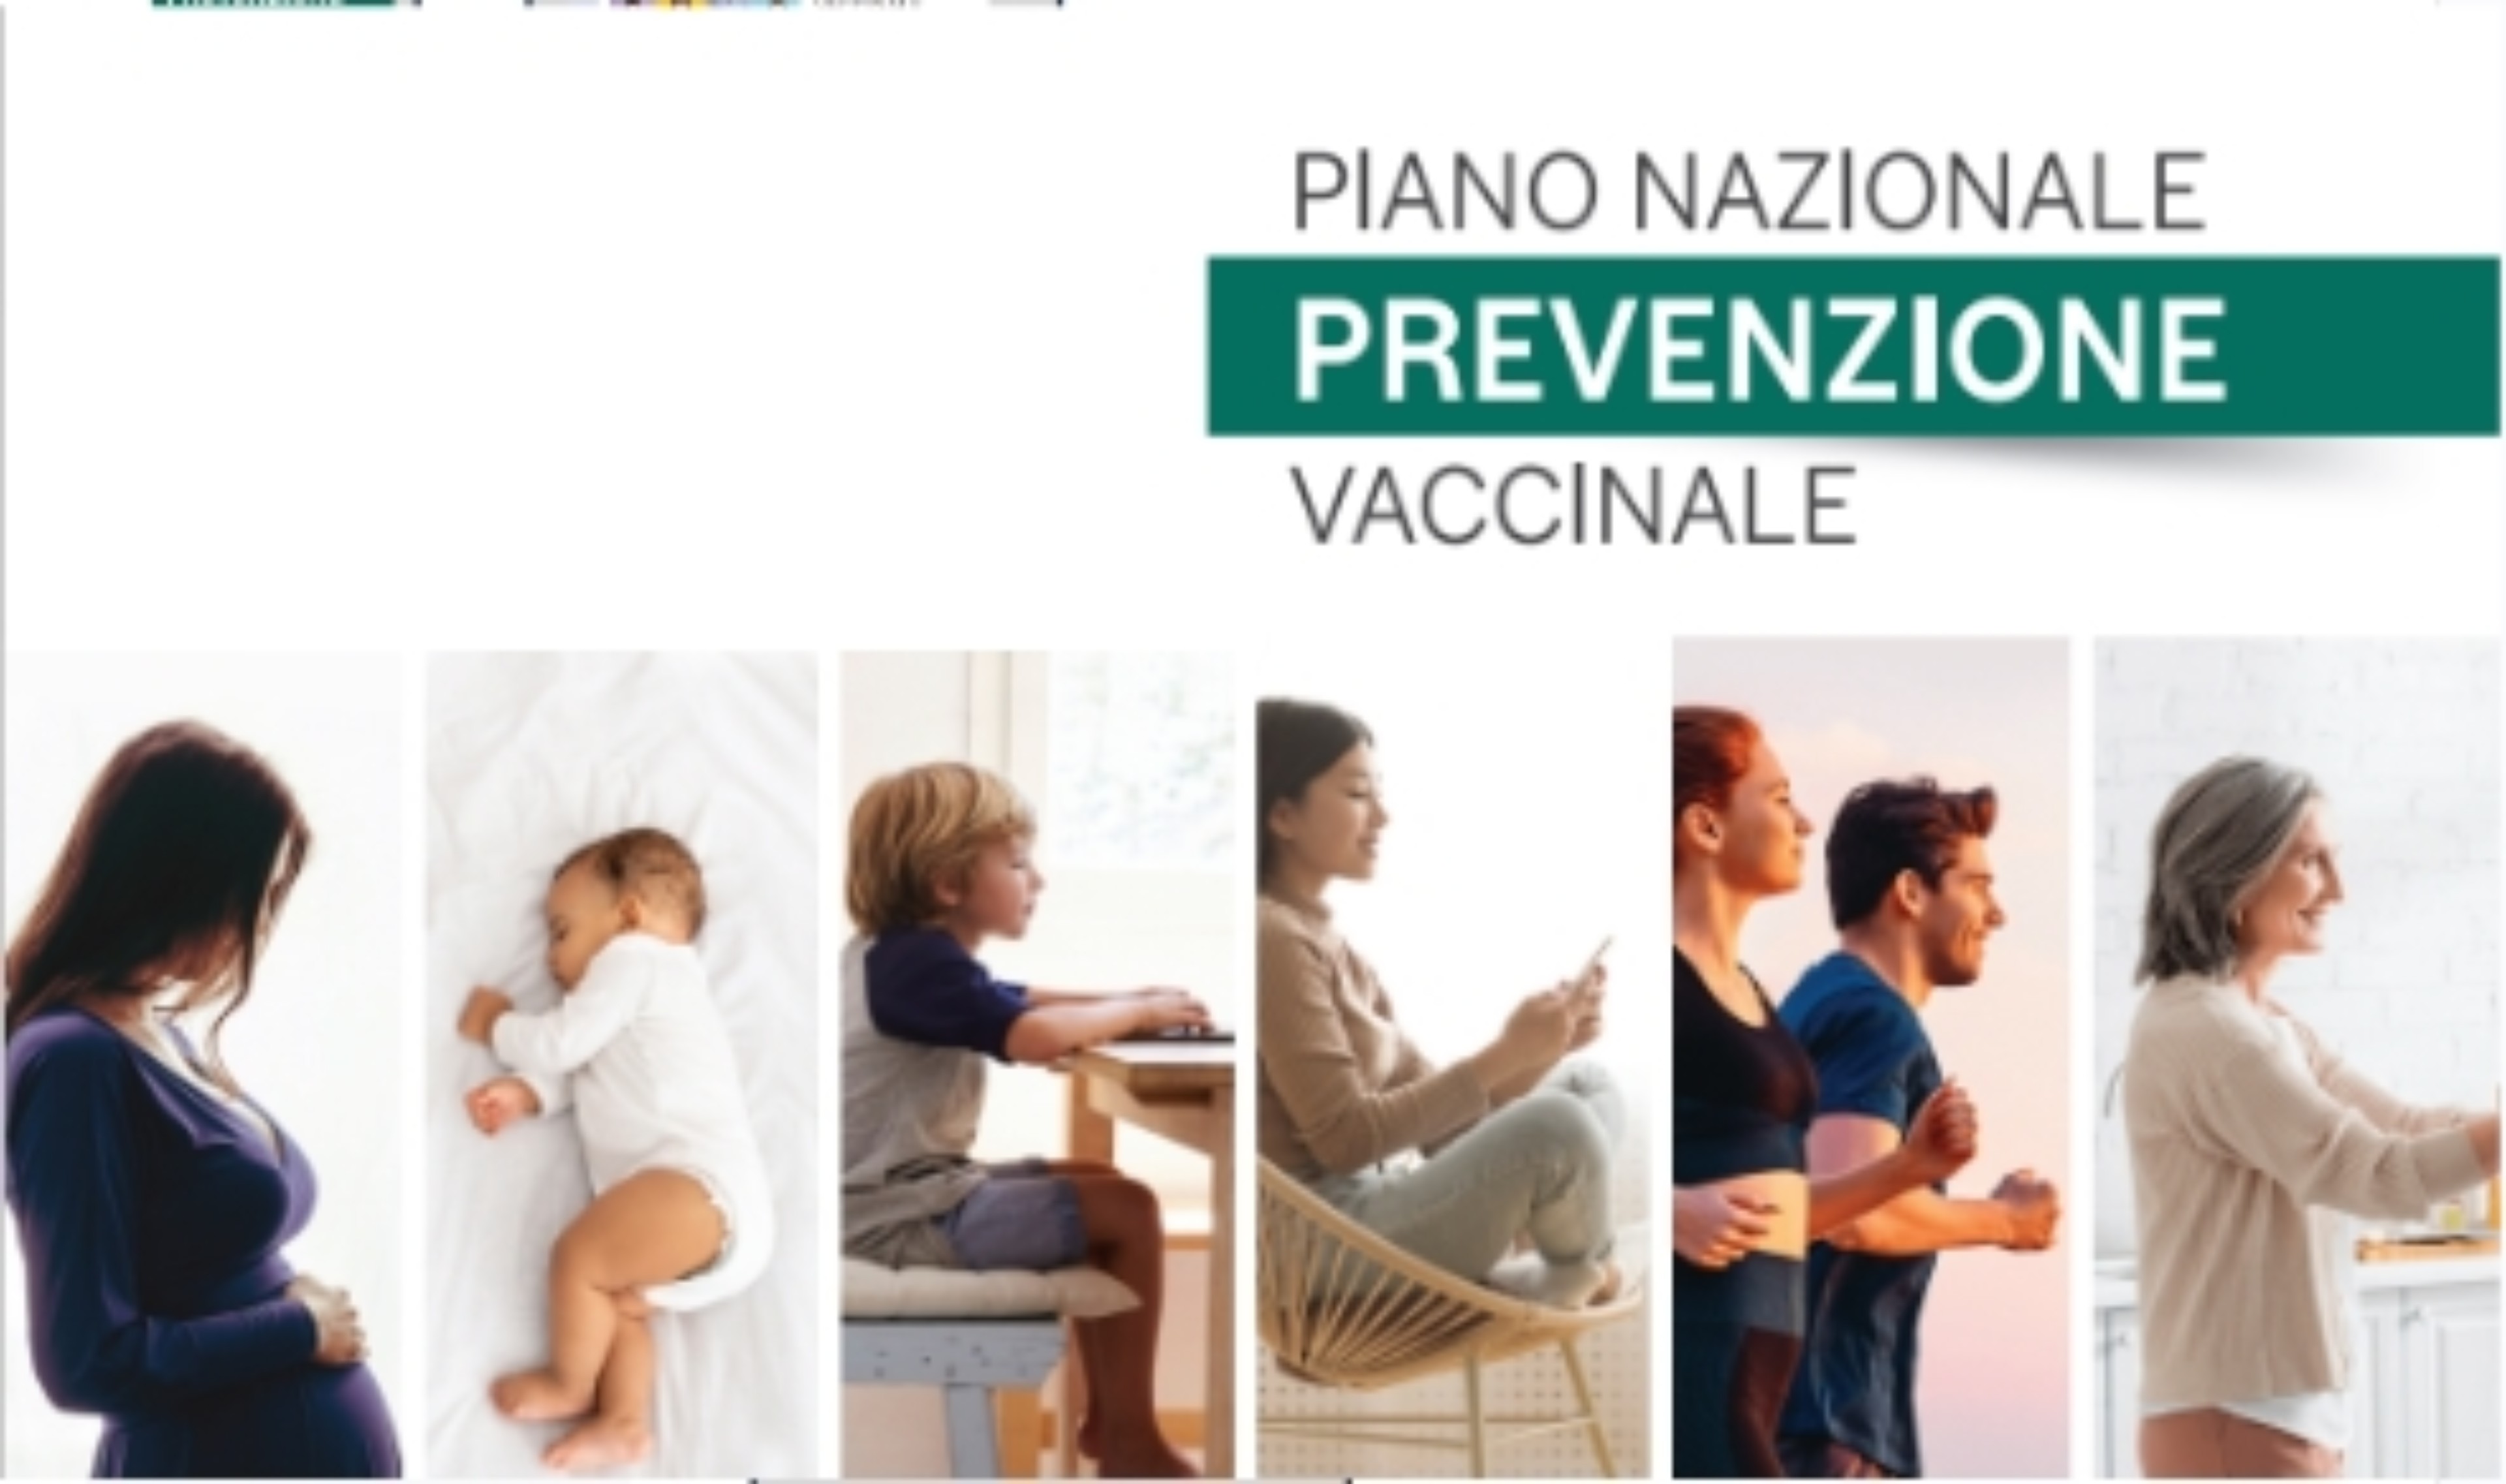 Piano Nazionale Prevenzione Vaccinale